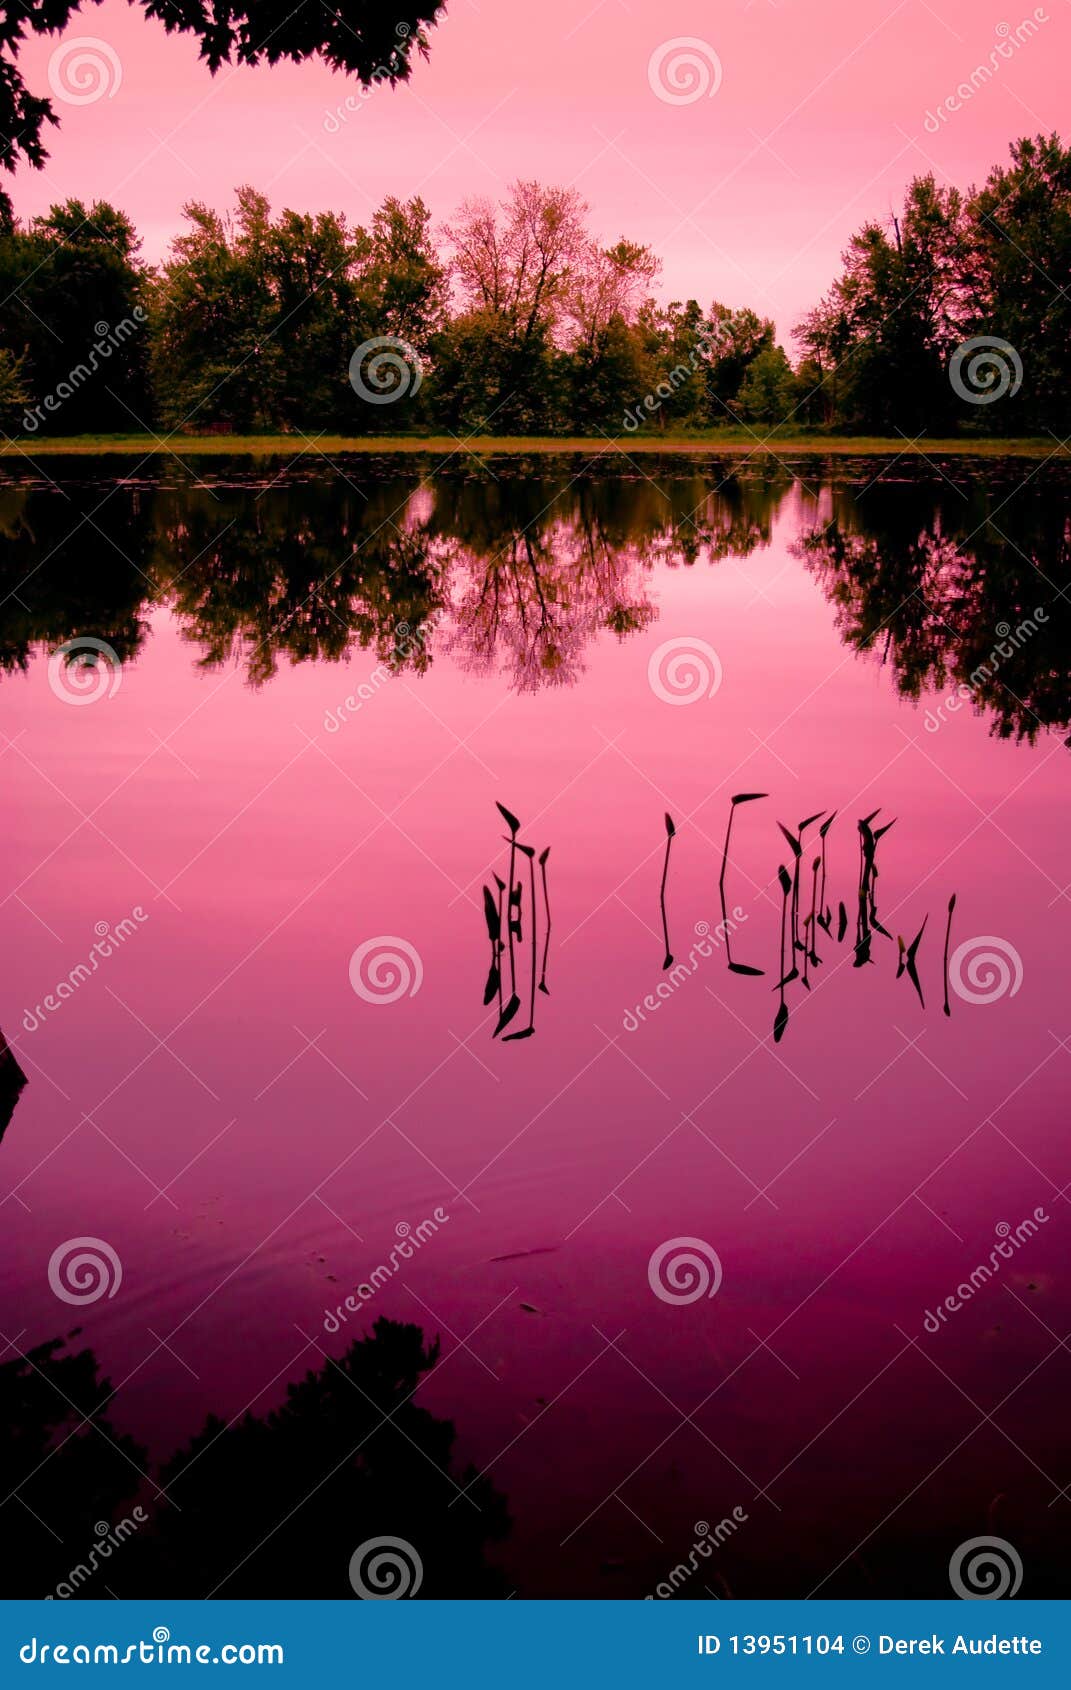 Junge Unkräuter in einem Sumpf-Teich. Eine Versammlung der jungen Unkräuter wachsen aus dem ruhigen Wasser einer Ruhe heraus, Sumpfteich unter einem rosafarbenen Sonnenuntergang.